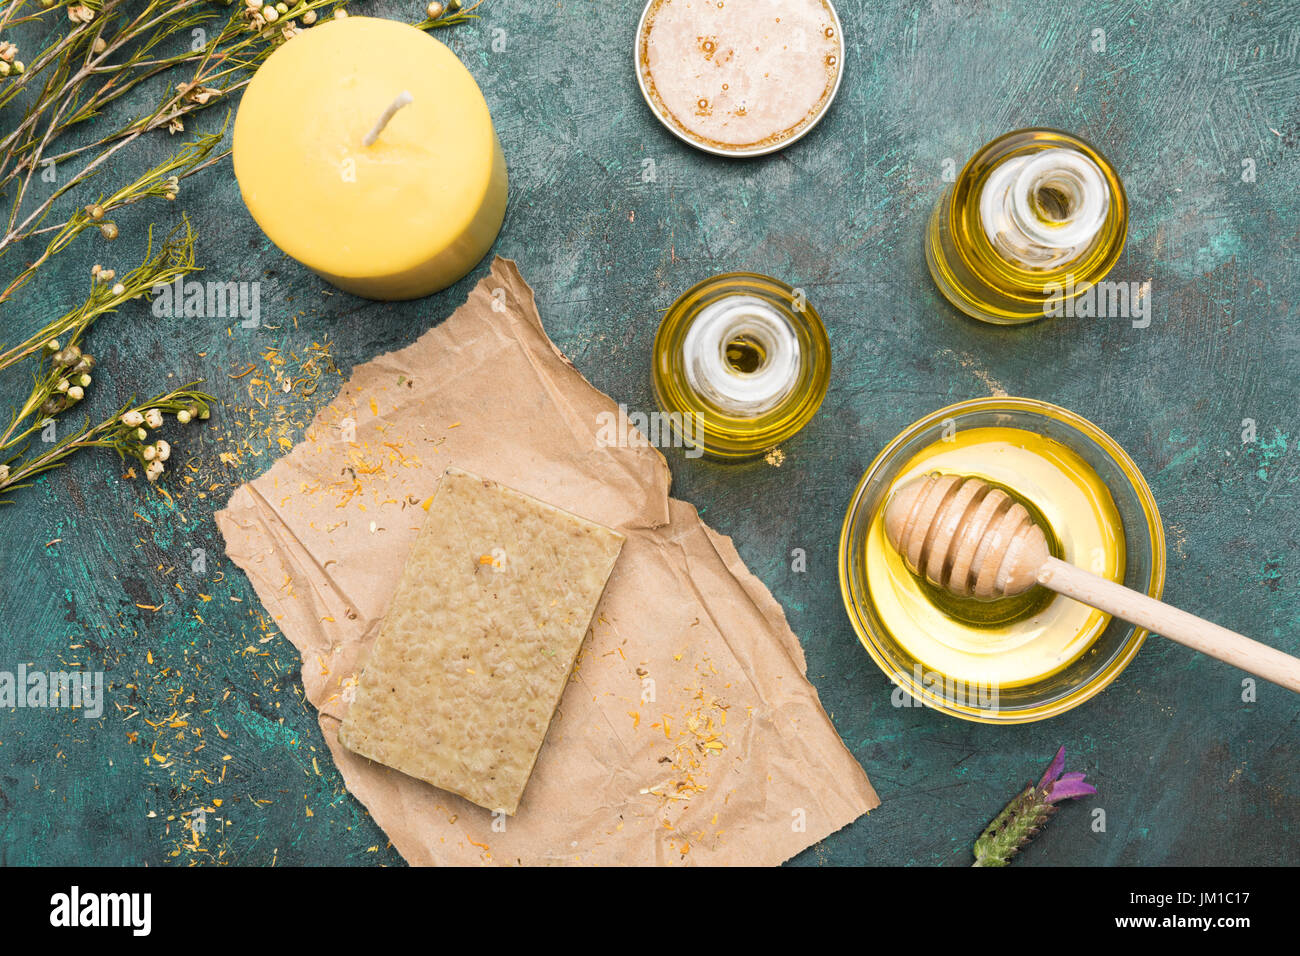 Vista superiore del Sapone casalingo, olio essenziale, candela e miele per cure di bellezza Foto Stock